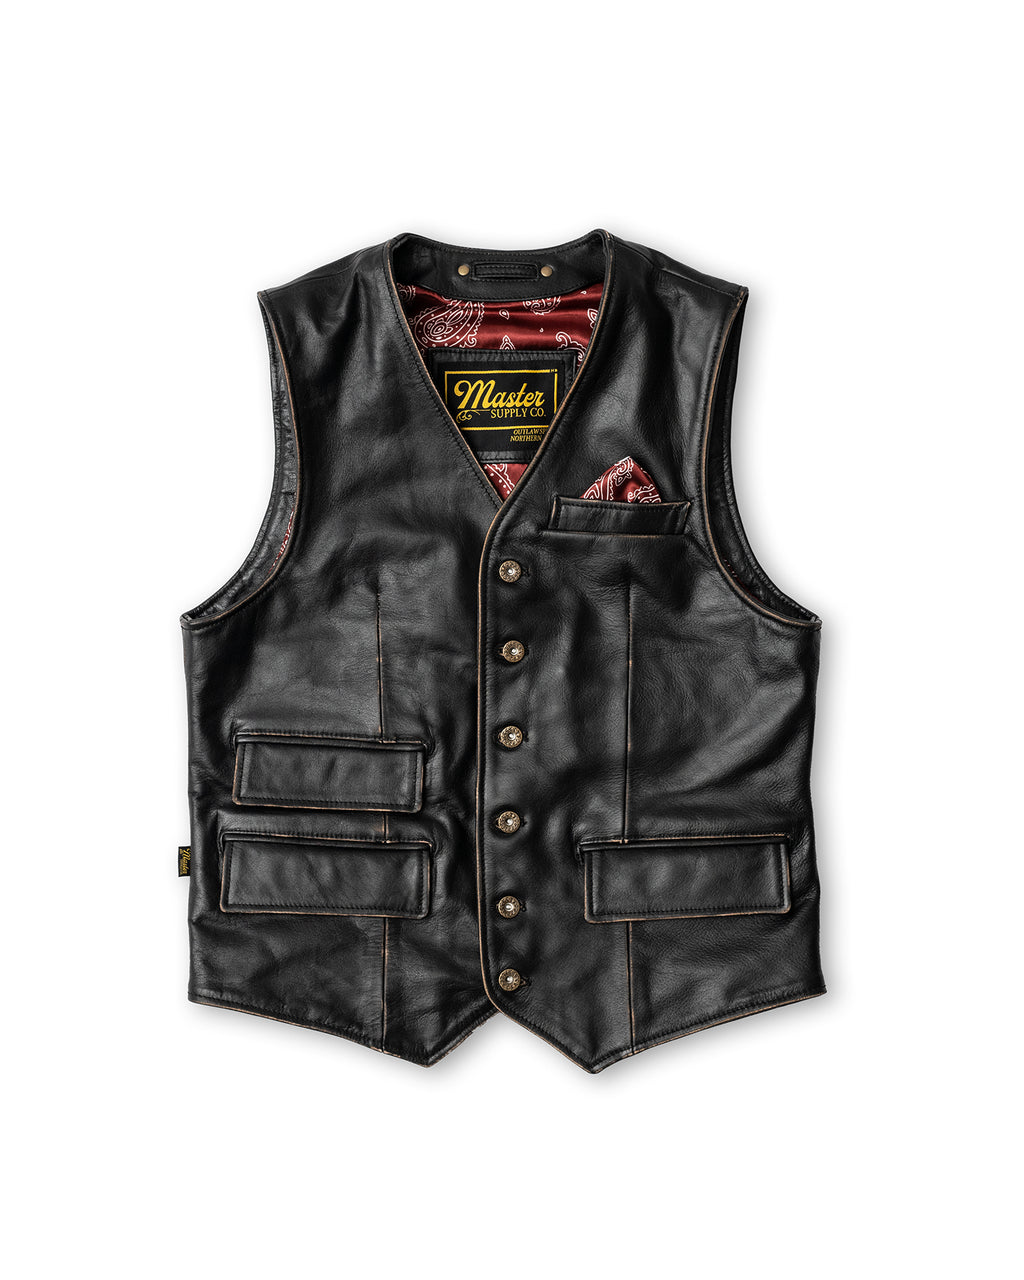 Gunslinger Leather Vest | Men's Vest | Master Supply Co.